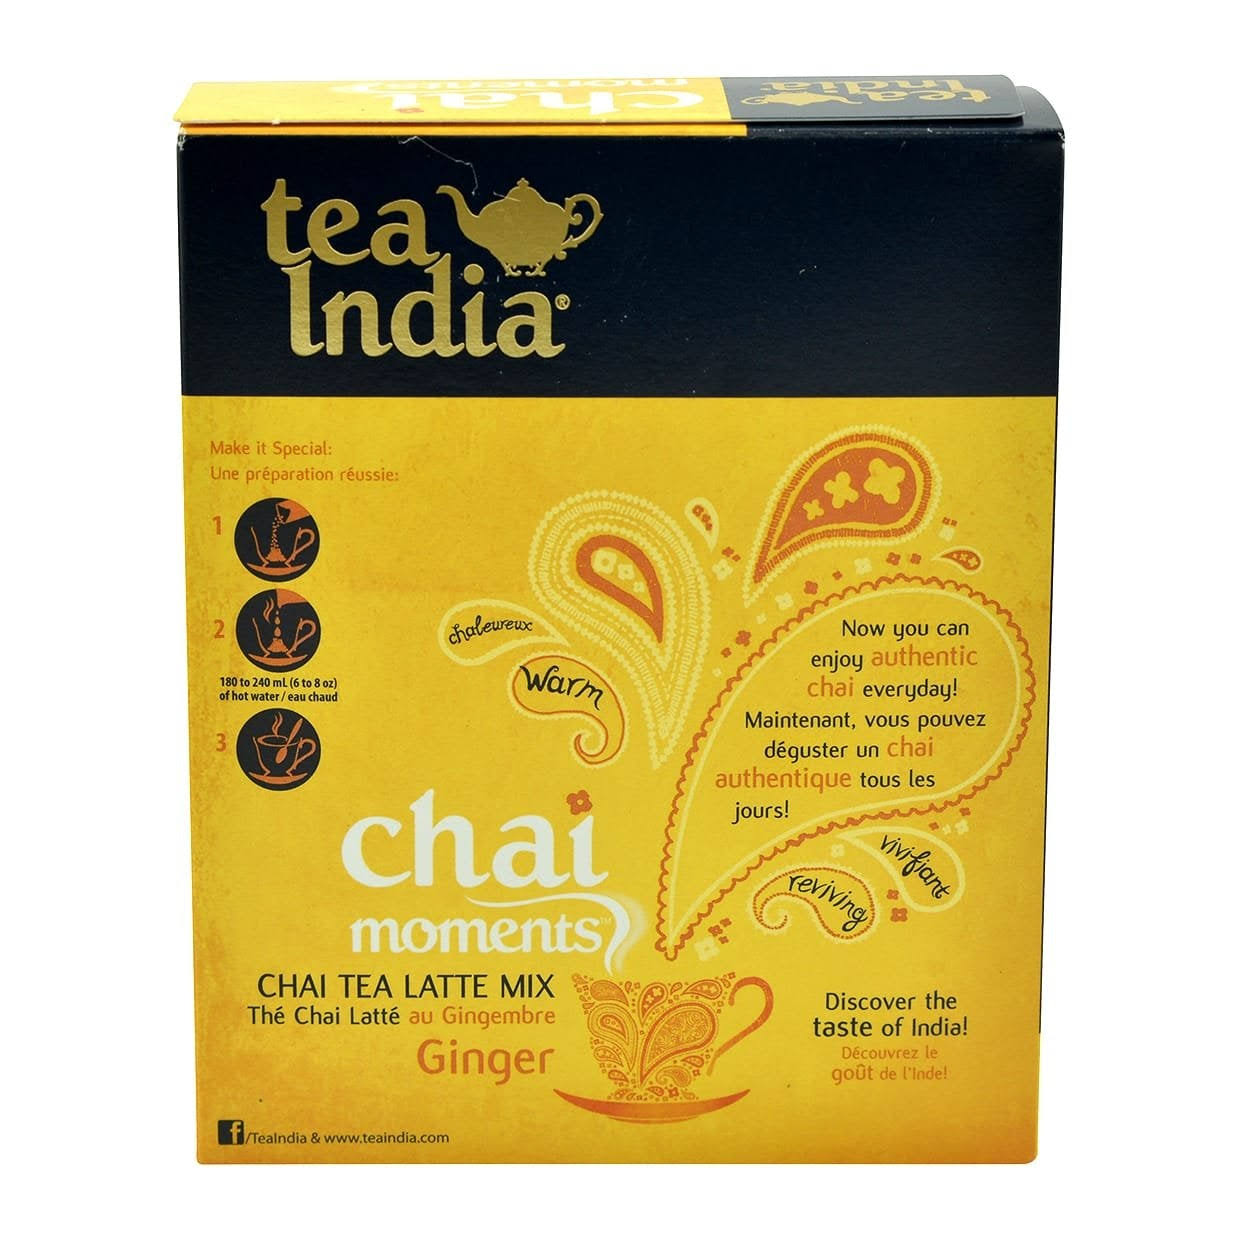 Tea India, Ginger Chai Tea Latte Mix, 10 Pouches